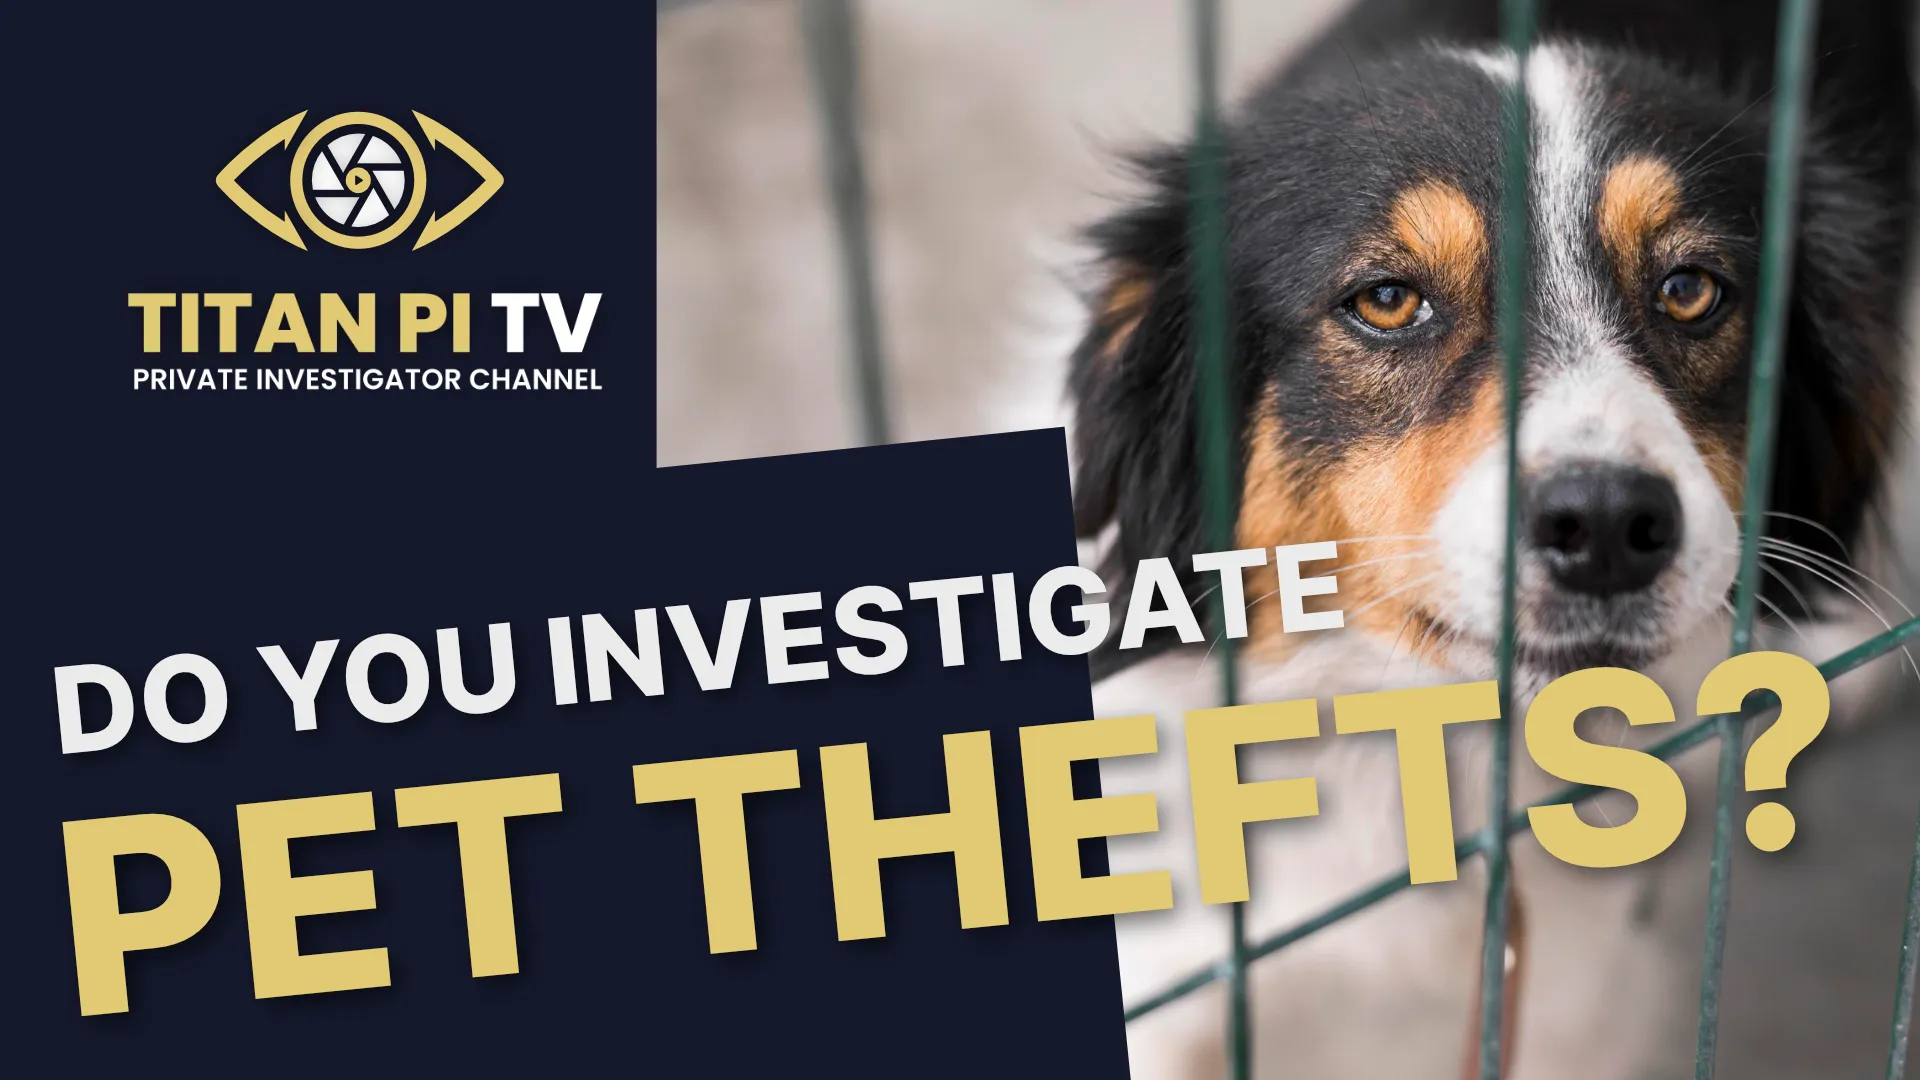 Do You Investigate Pet Thefts? Hire a Titan Pet Detective! - Episode 20 | Titan PI TV